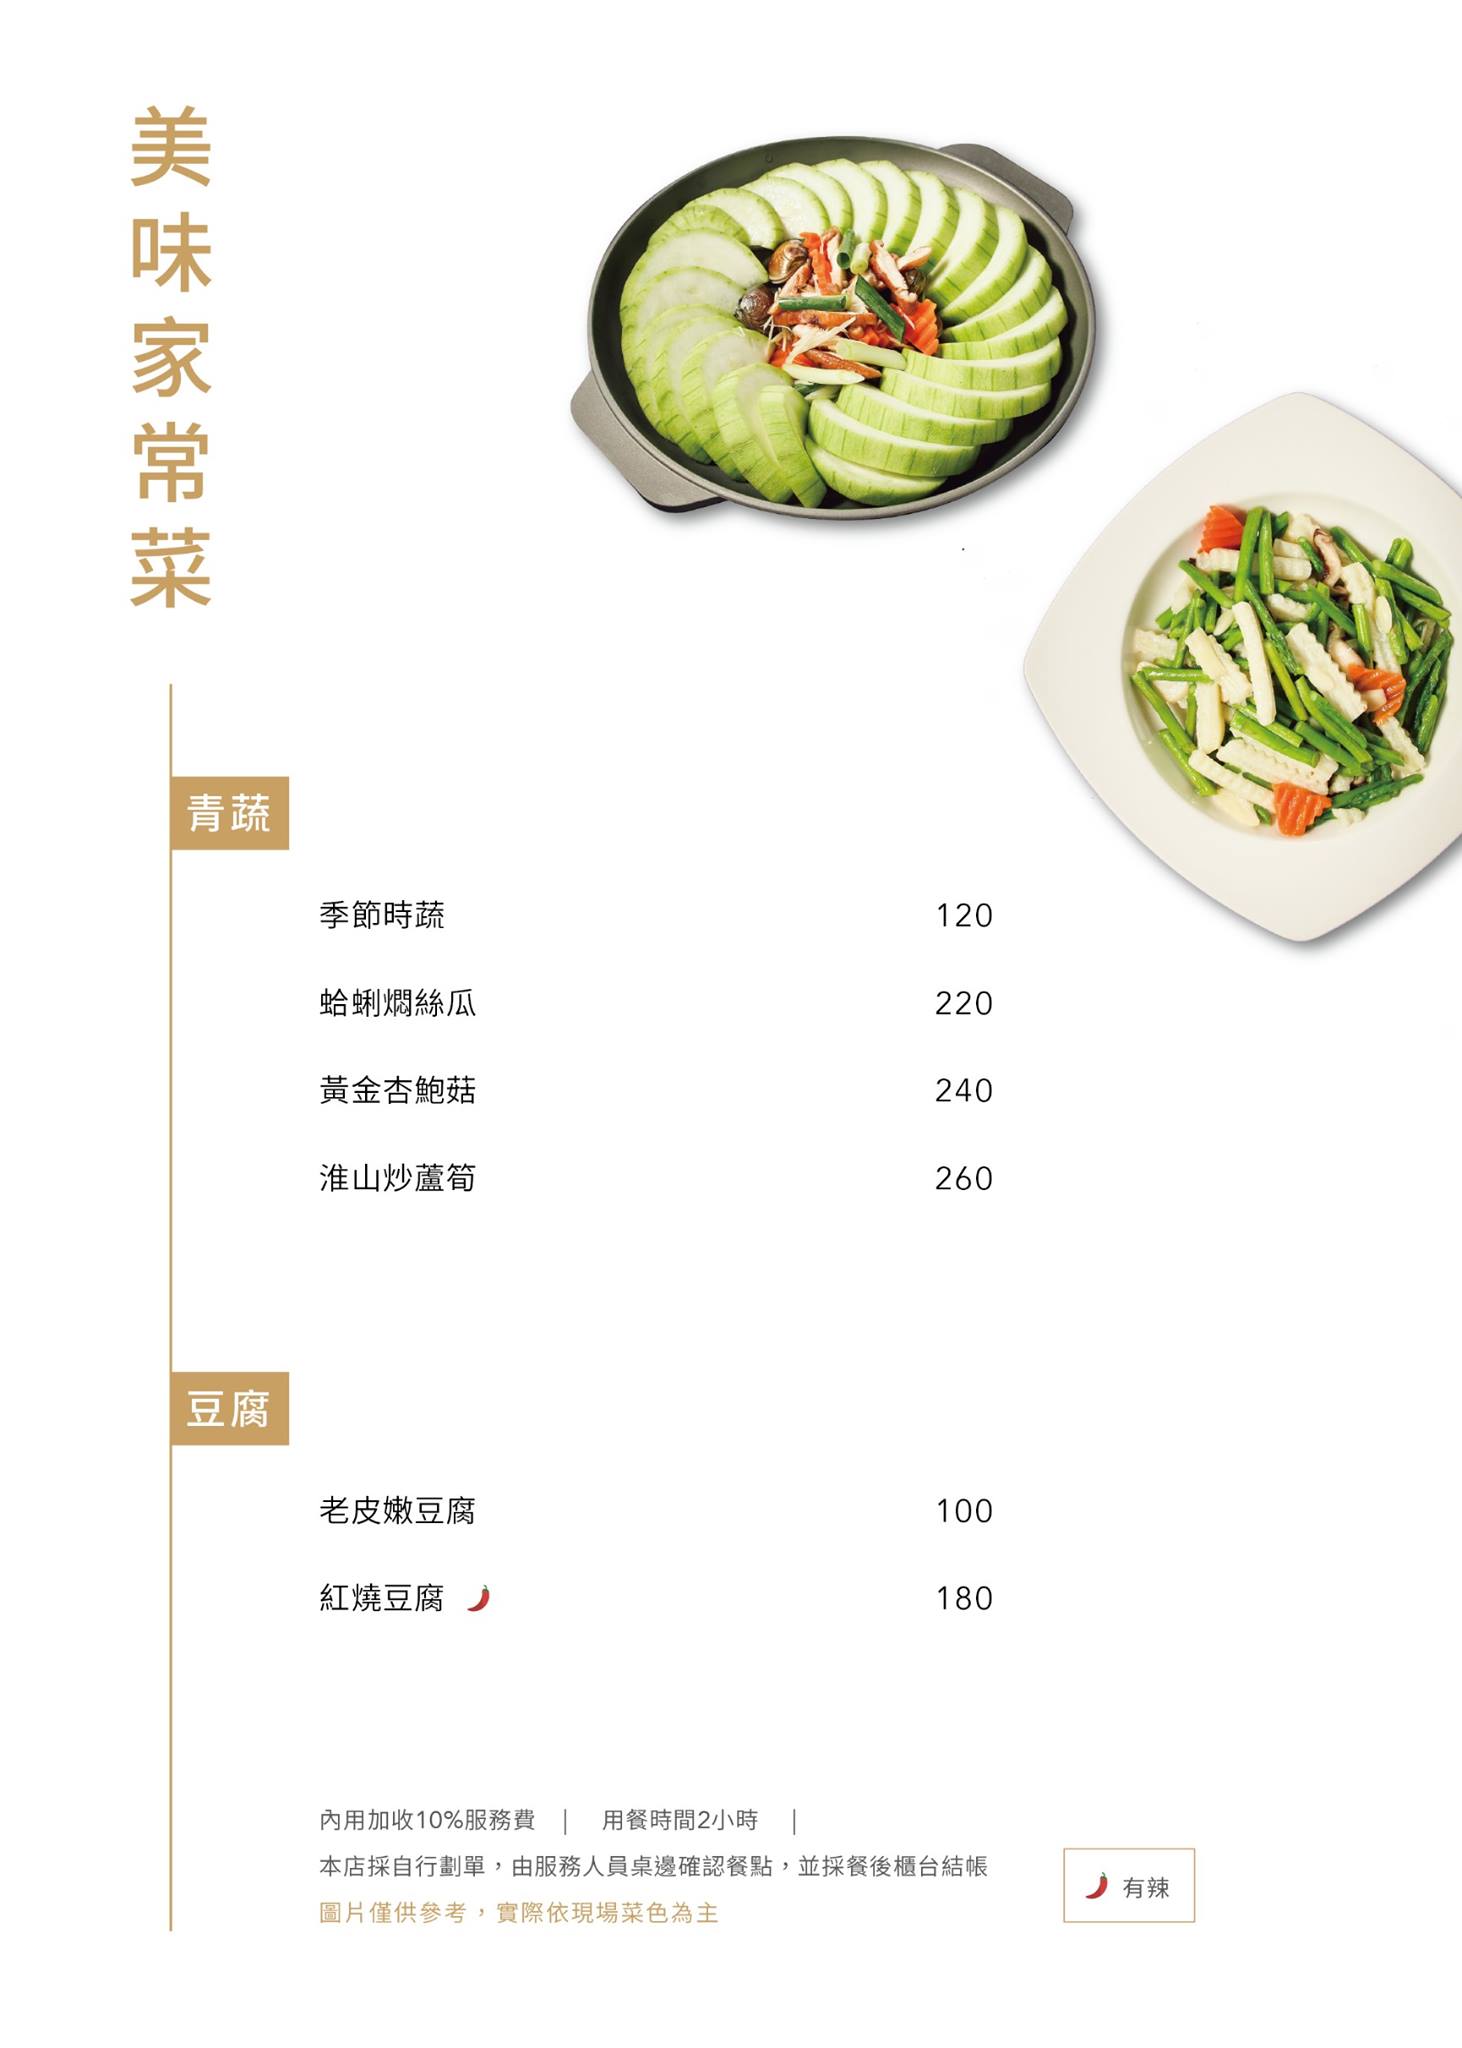 鴻龍宴餐廳菜單MENU